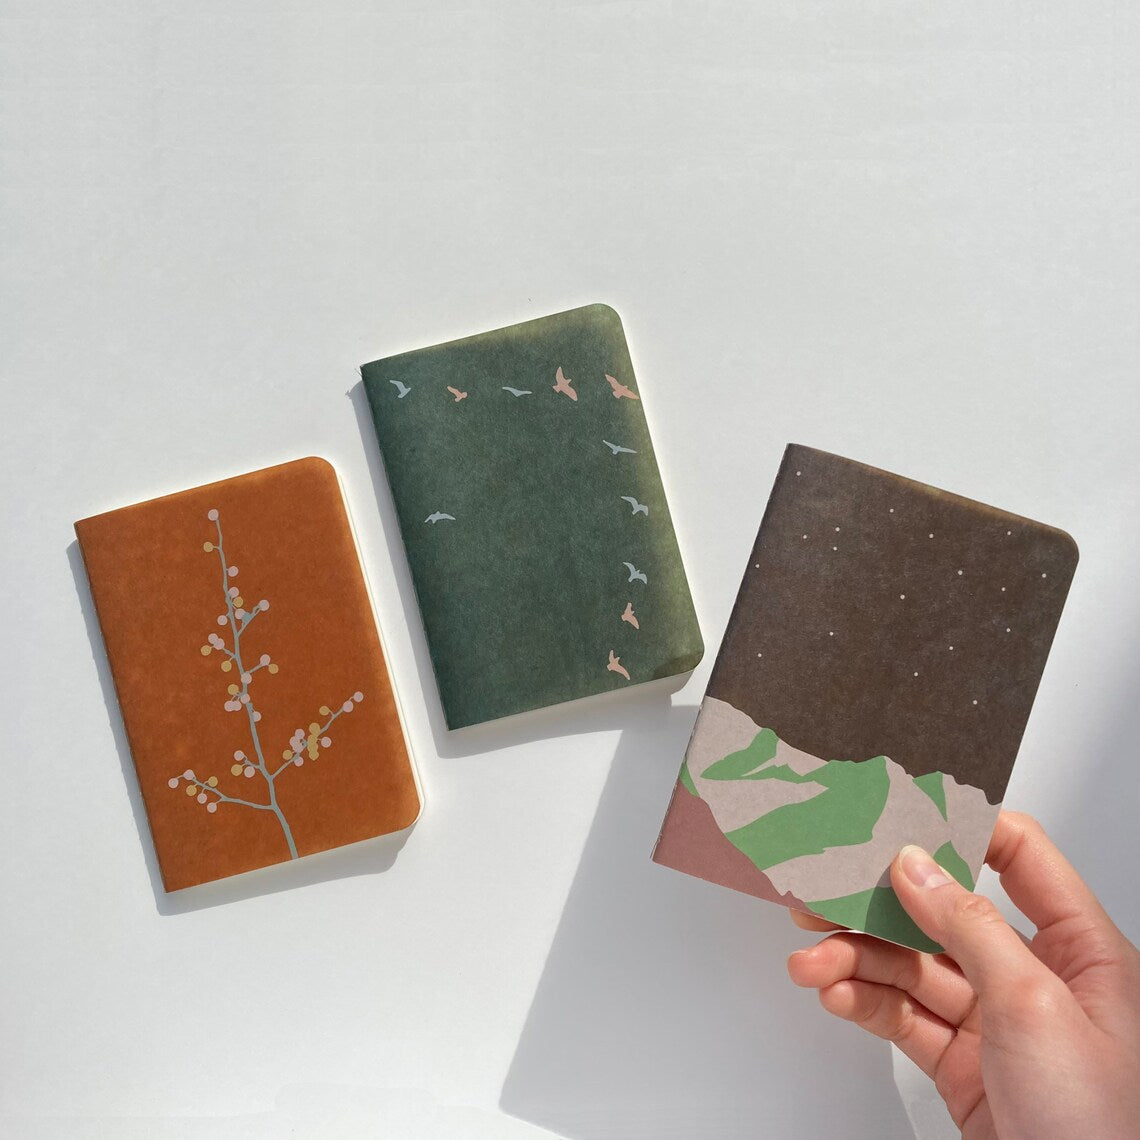 Yamamoto Paper Ro-Biki Notebook (Shape Series)